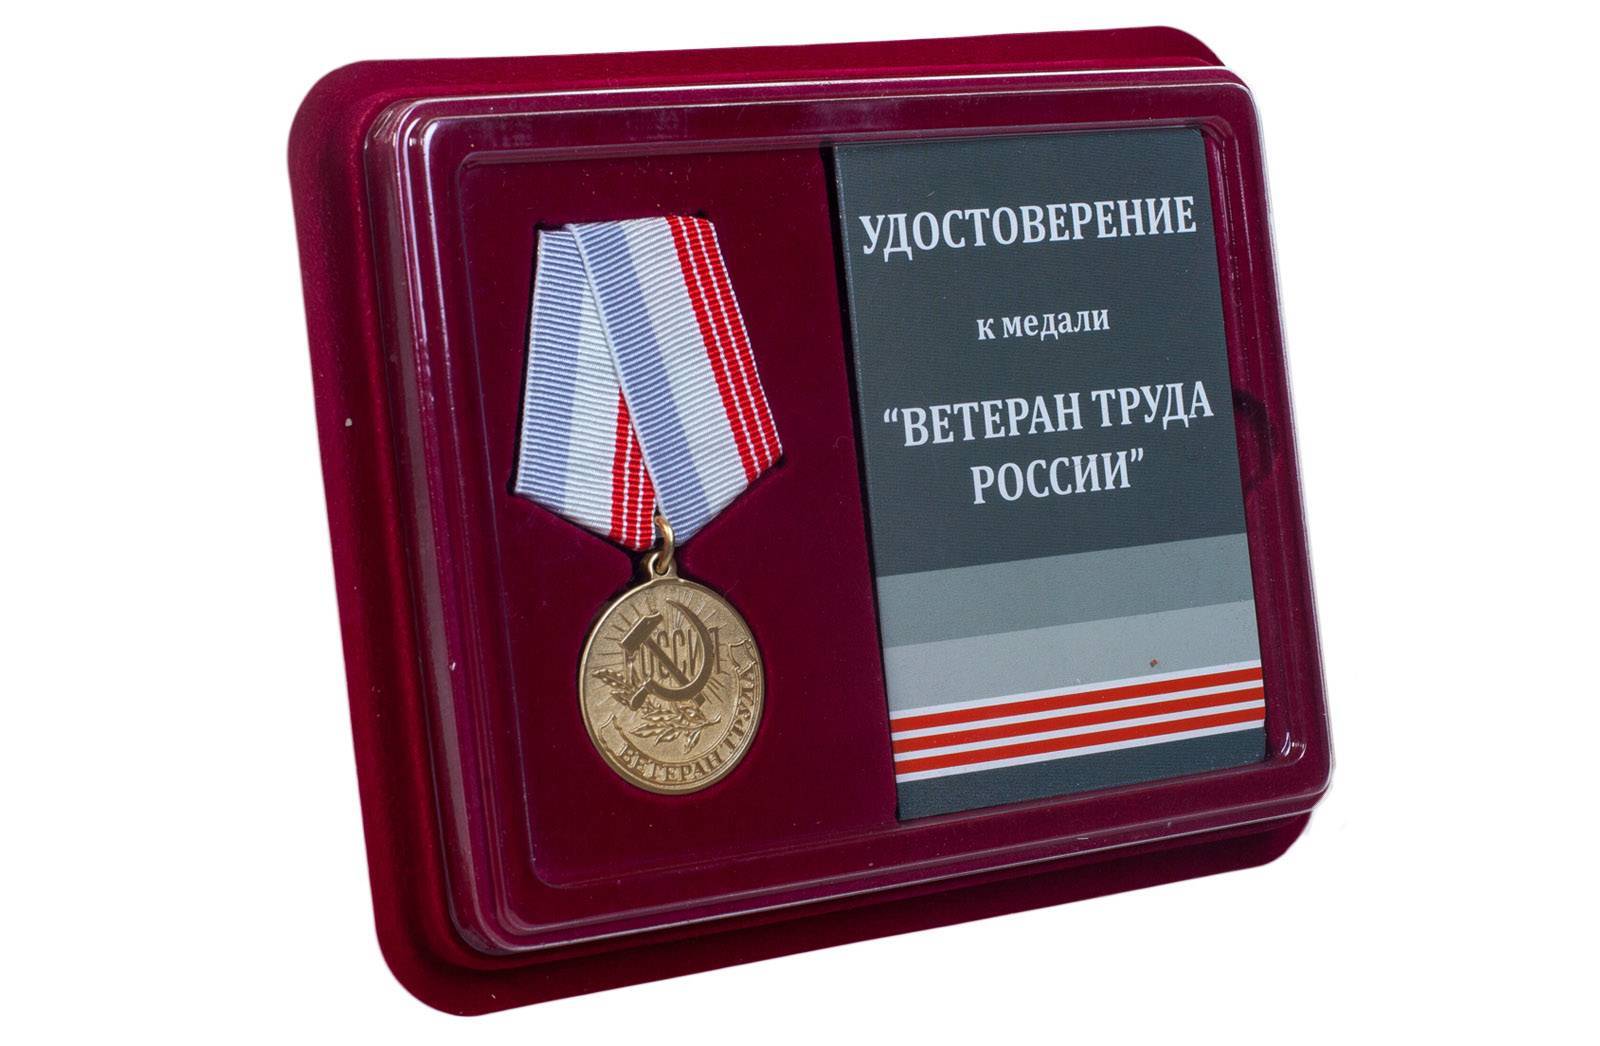 Как получить звание ветерана труда российской федерации? особенности процедуры